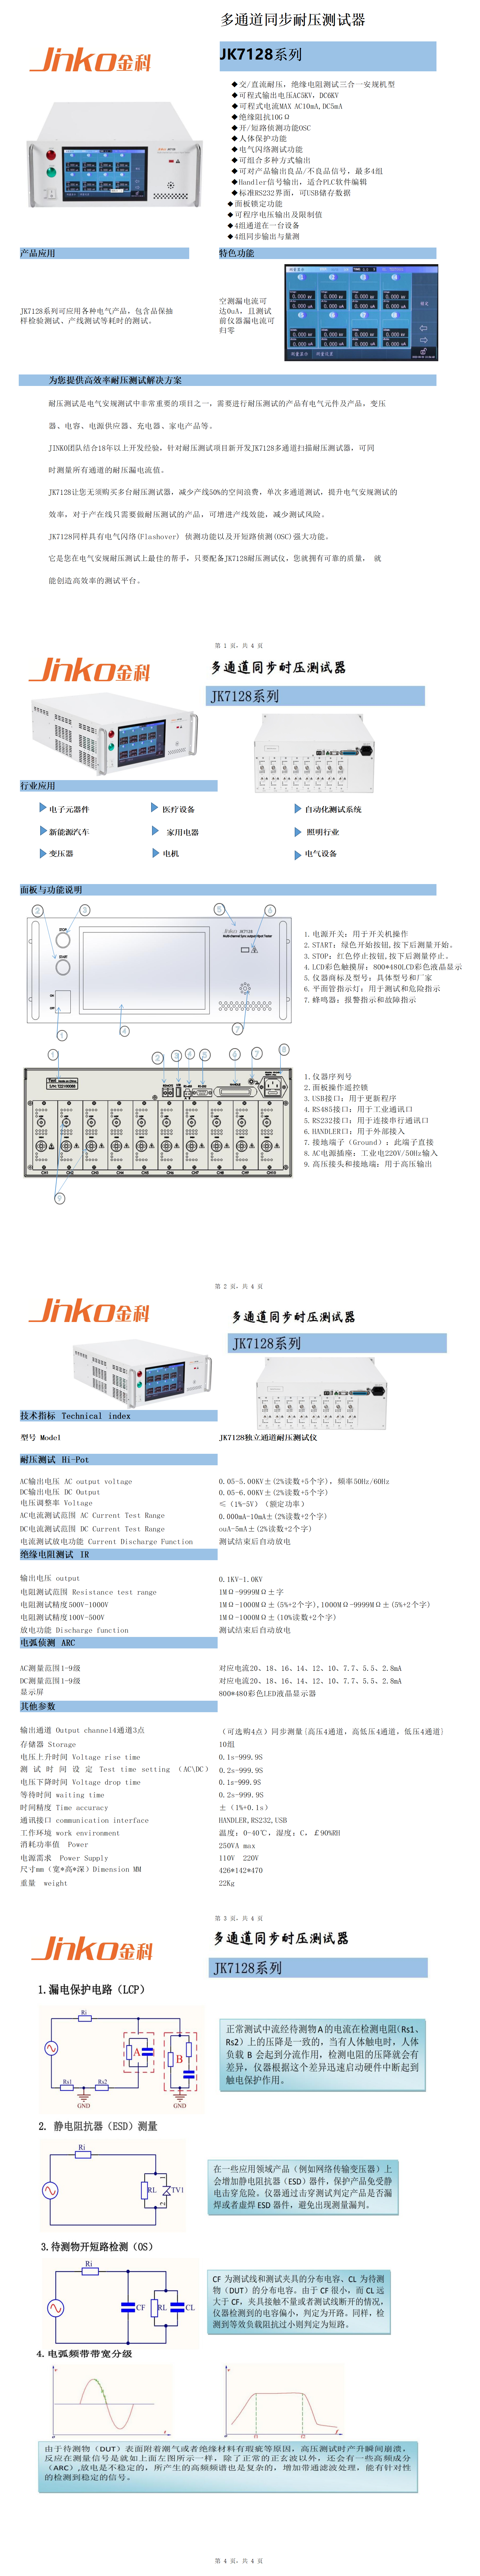 JK7128多路耐压绝缘测试仪(1)_01.png